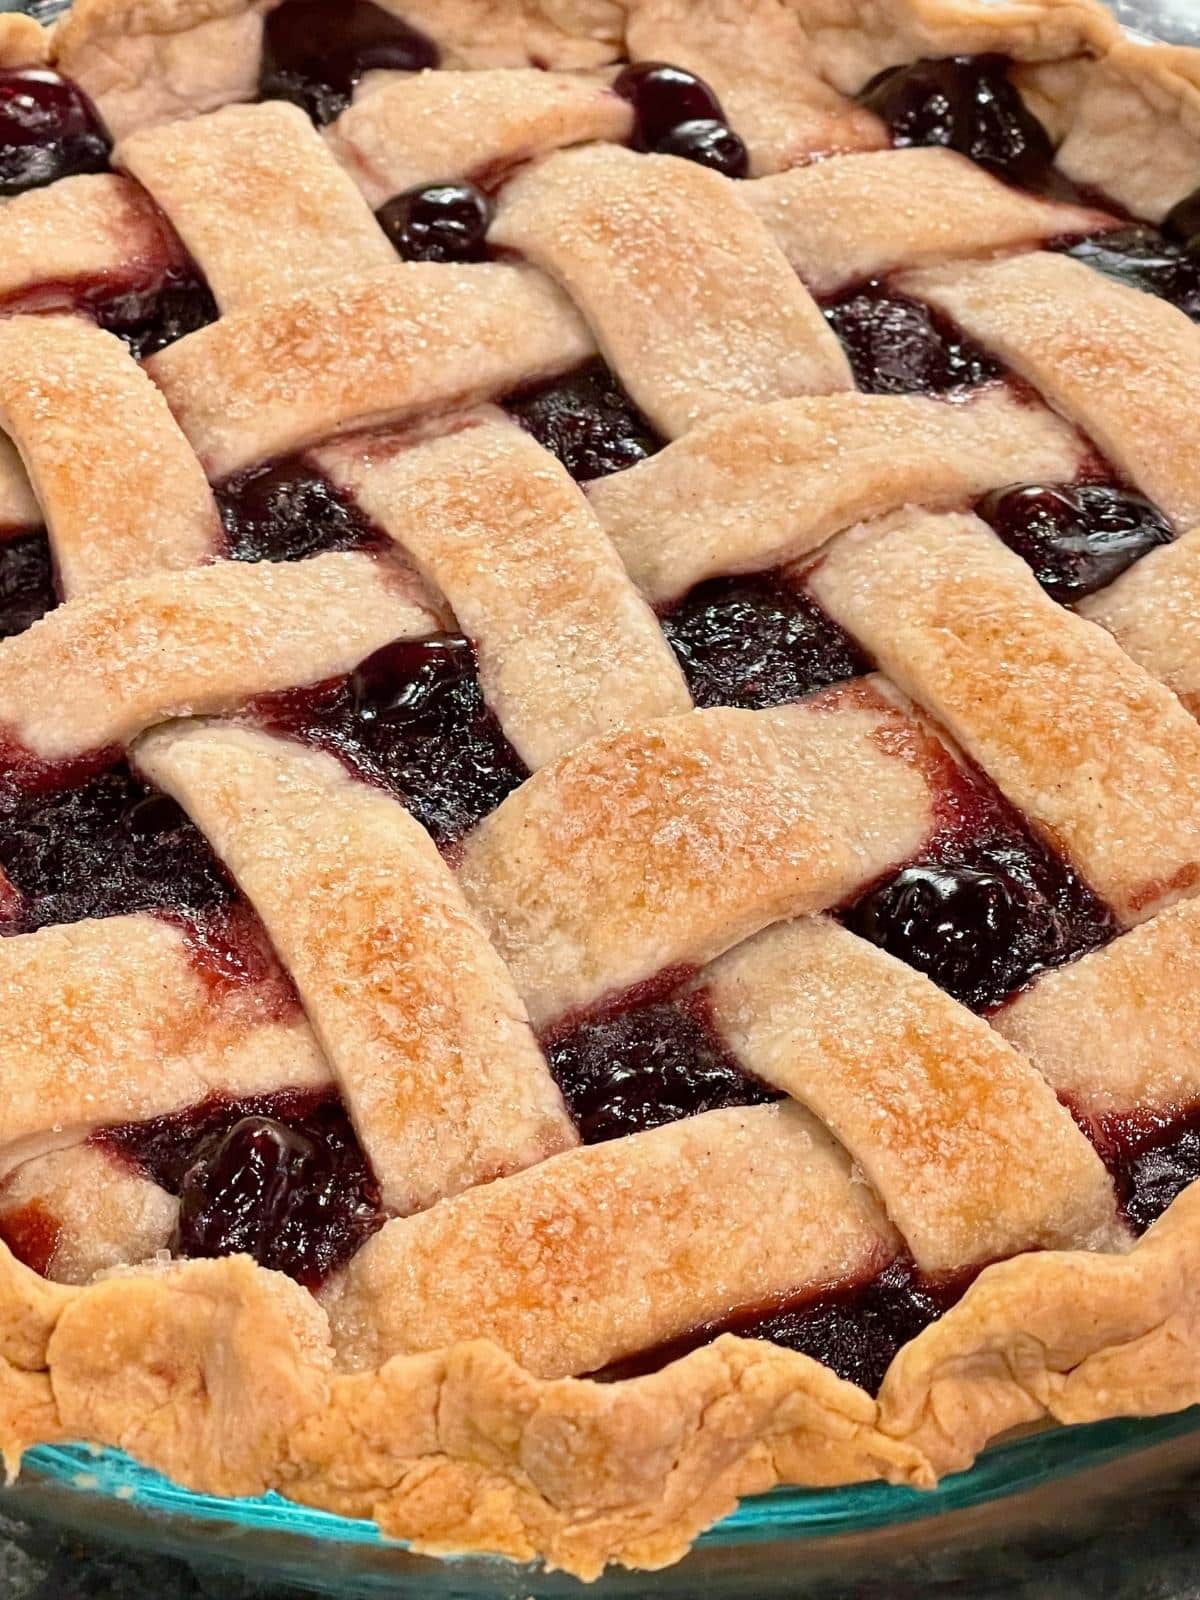 Cherry pie with lattice top.